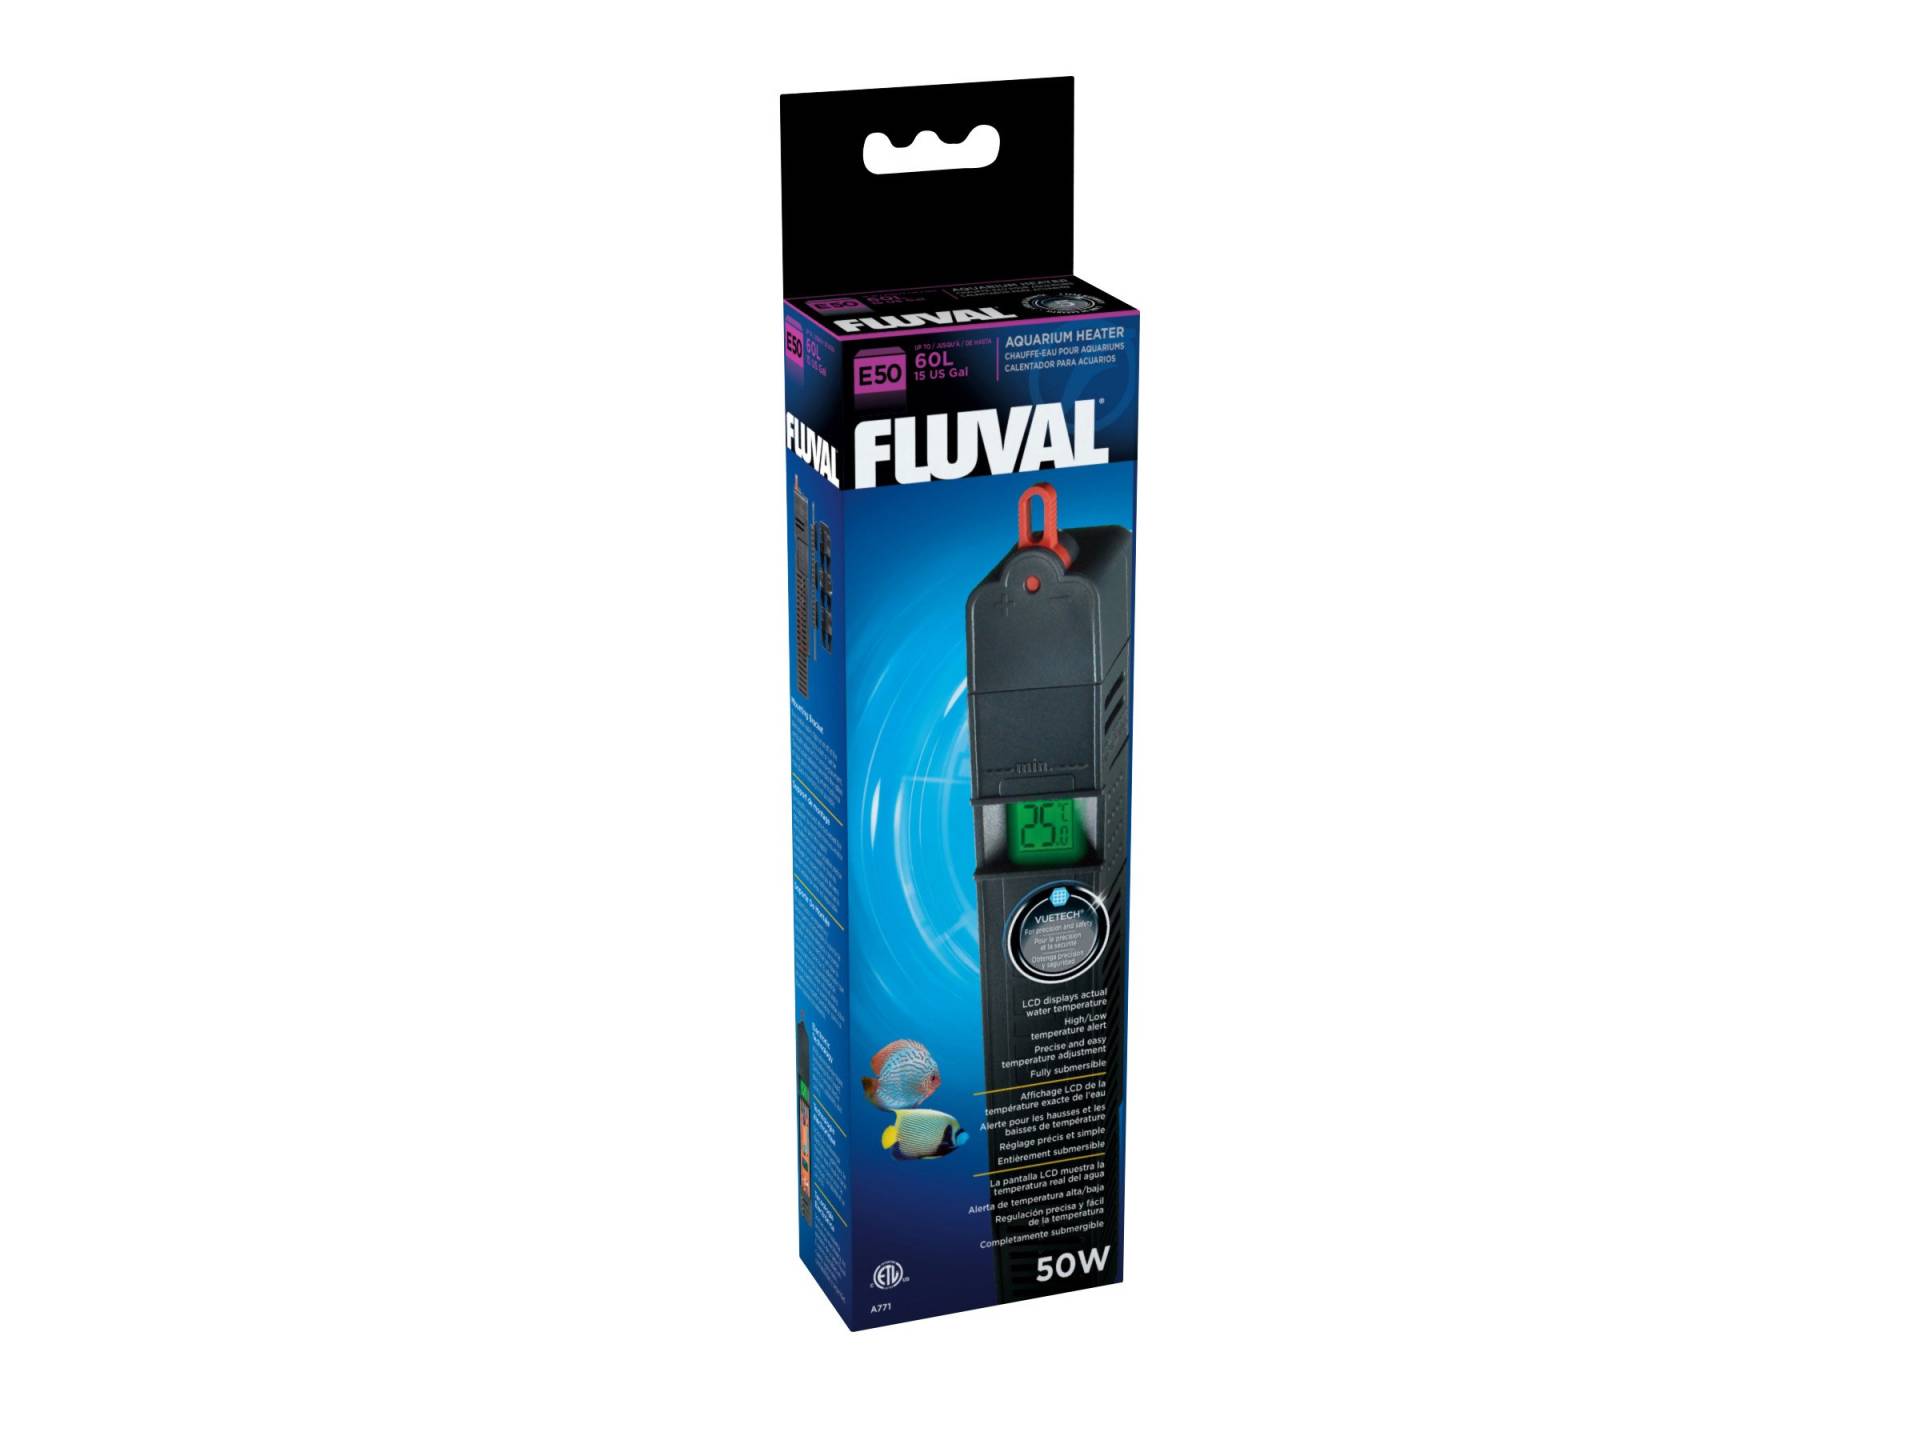 Fluval E-Heizer - Der Elektronikheizer aus der E-Serie 50 Watt für Aquarien bis 60 Liter von Fluval